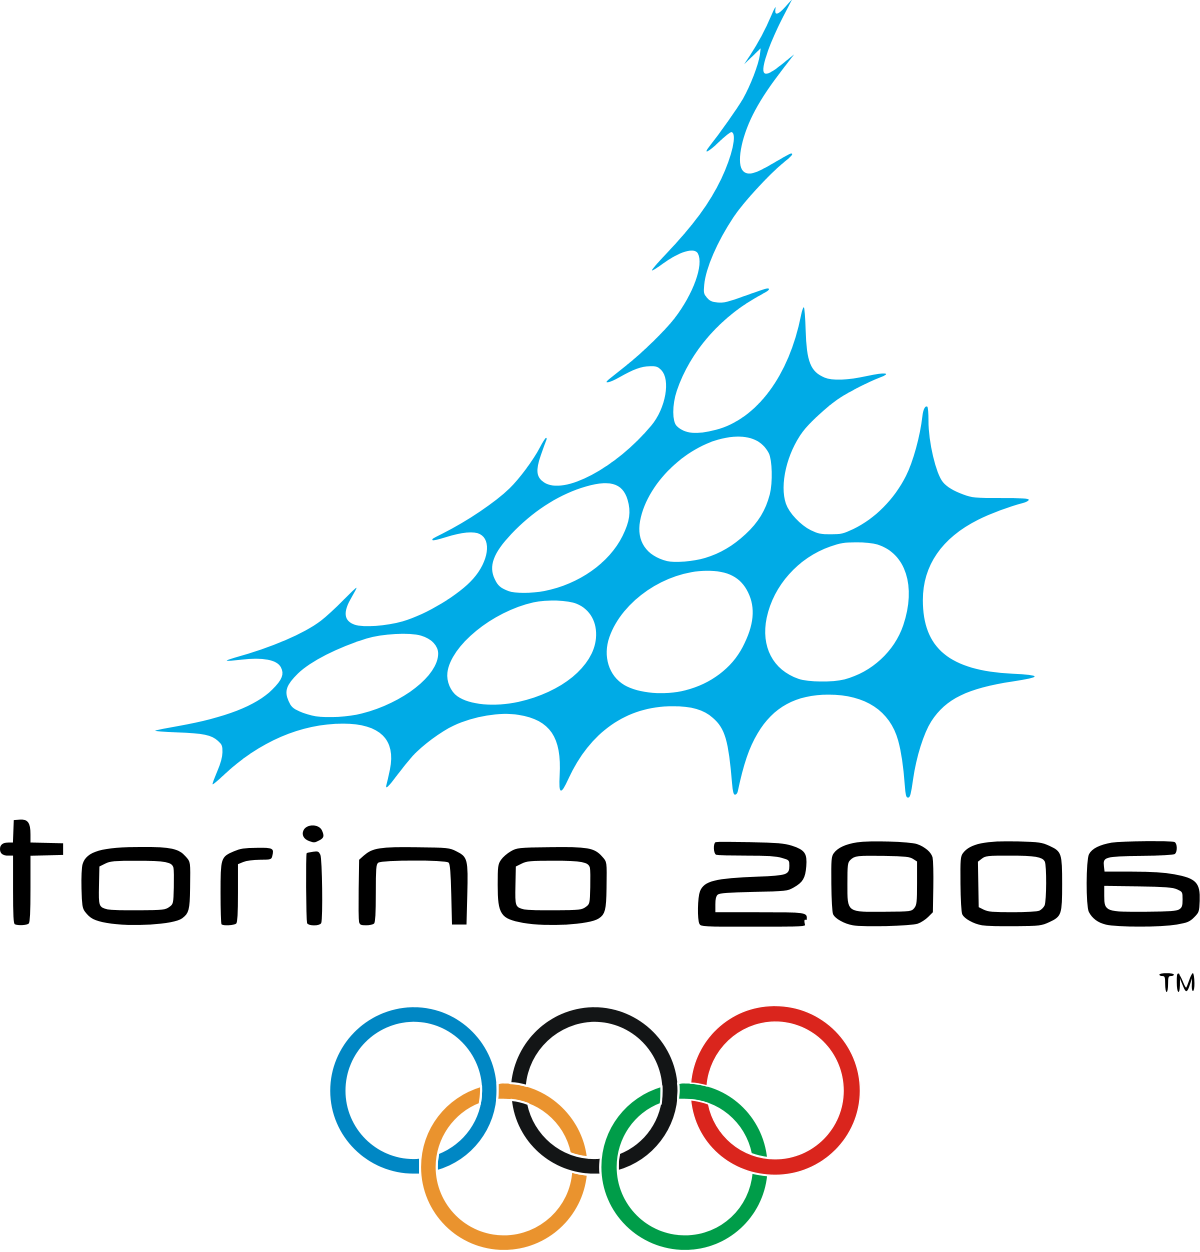 Thế vận hội Mùa đông 2006 – Wikipedia tiếng Việt